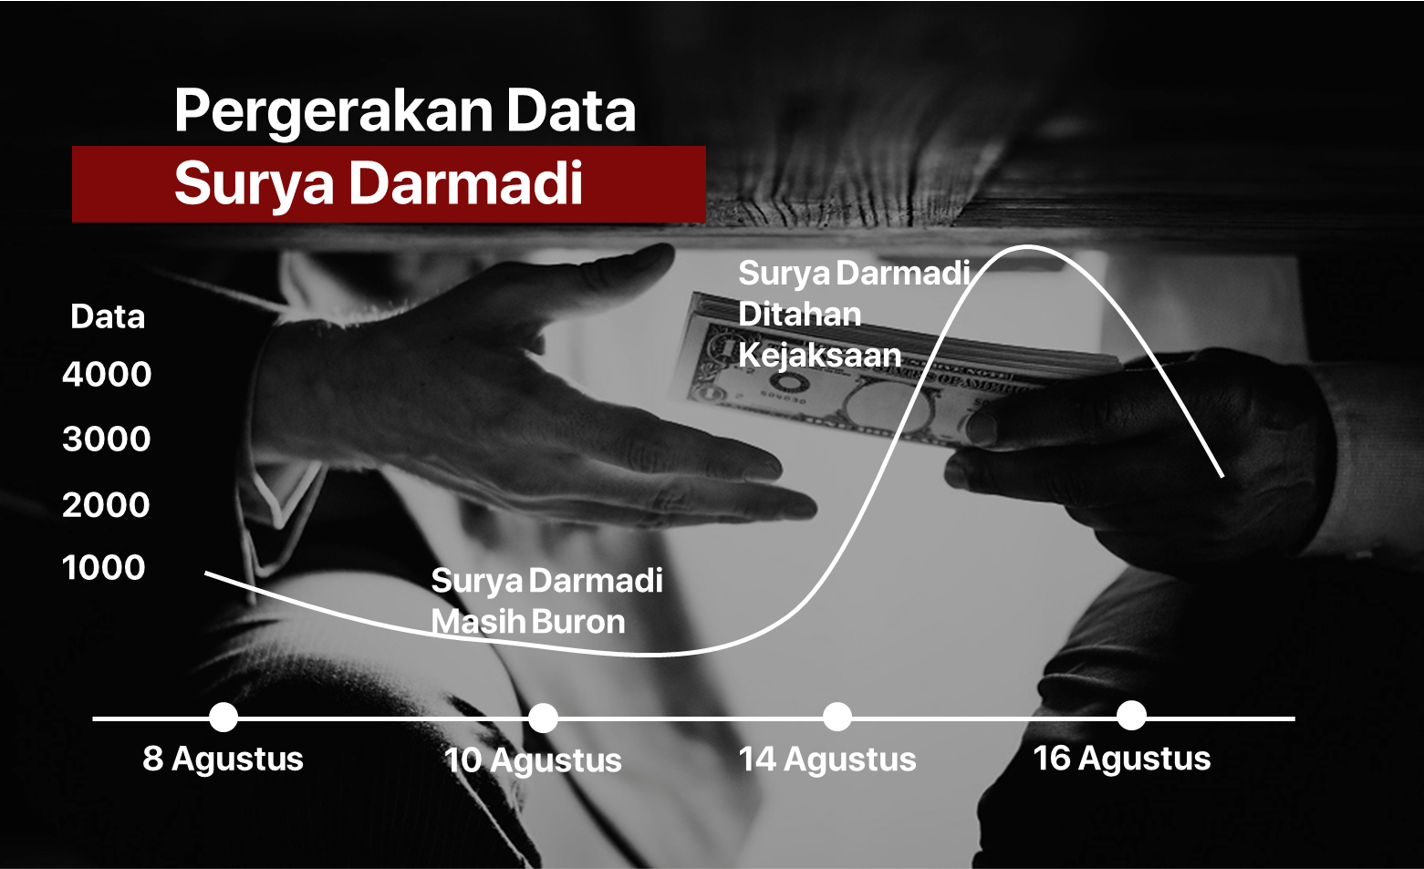 Surya Darmadi DPO Kasus Korupsi Rp78 Triliun Ditahan Kejaksaan, Dulu Dicari KPK